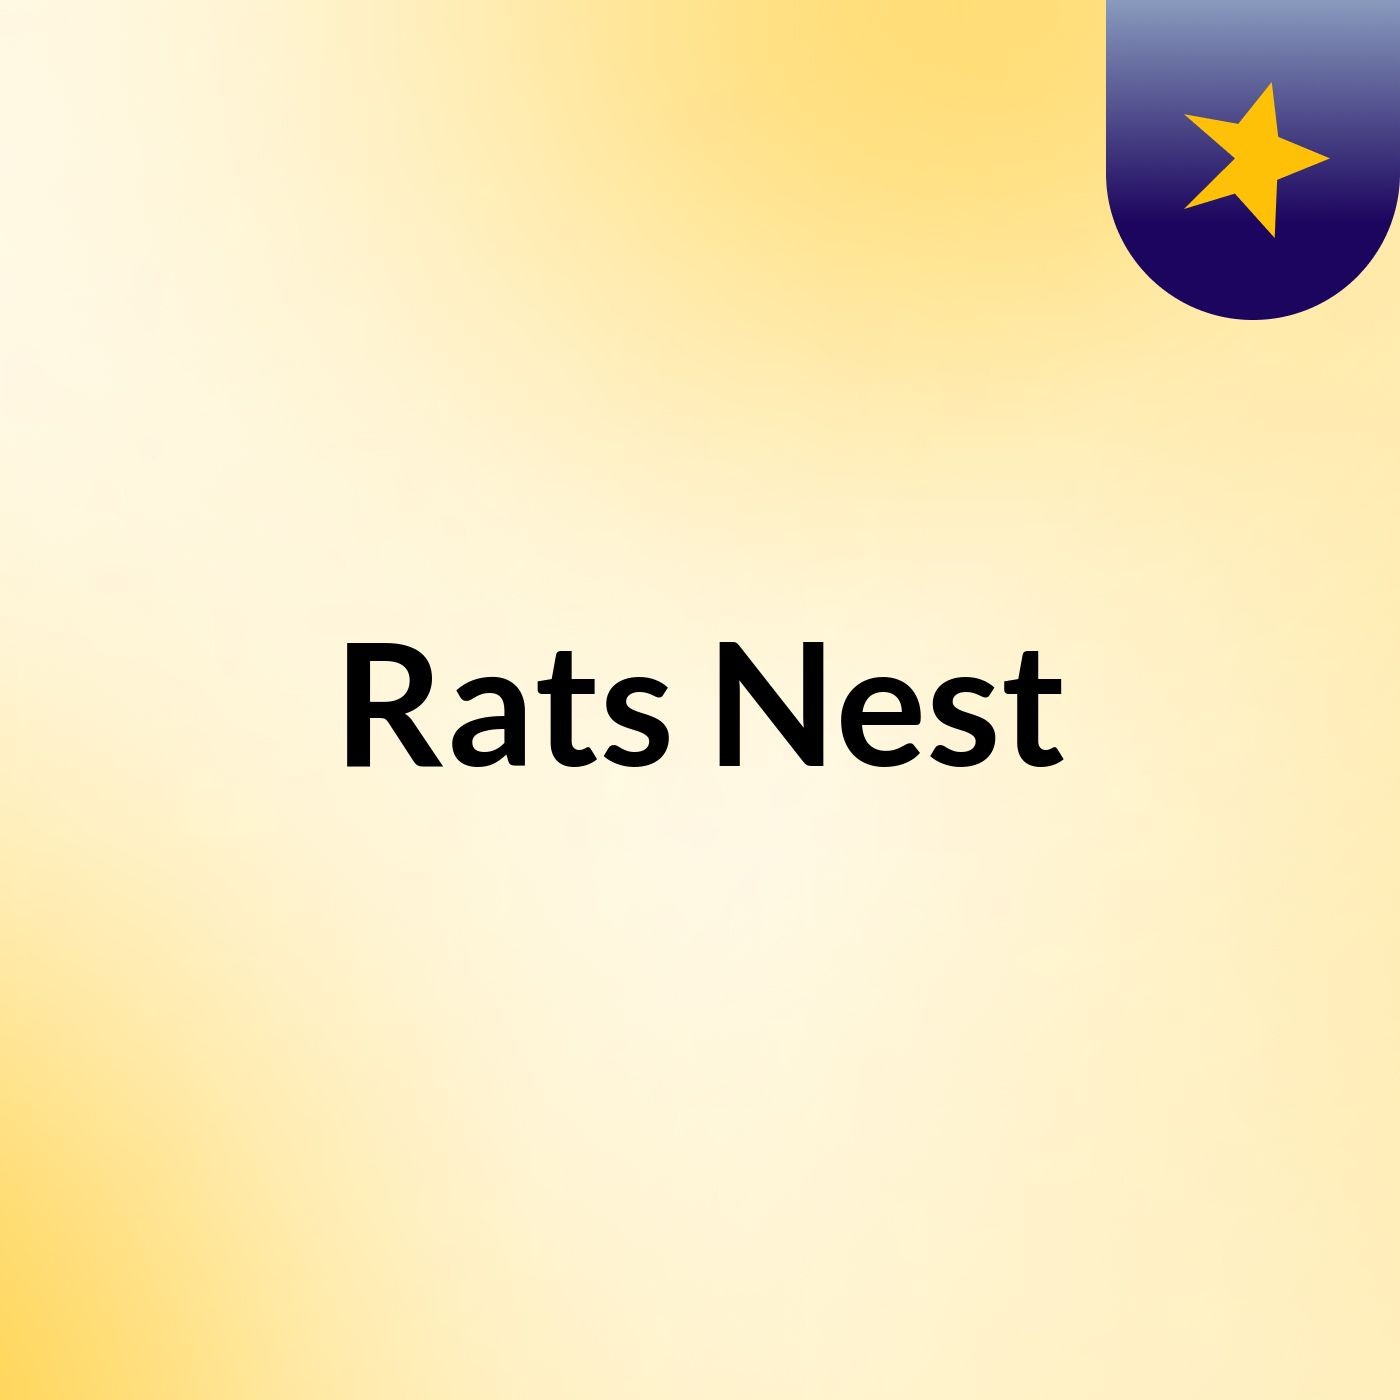 Rats' Nest